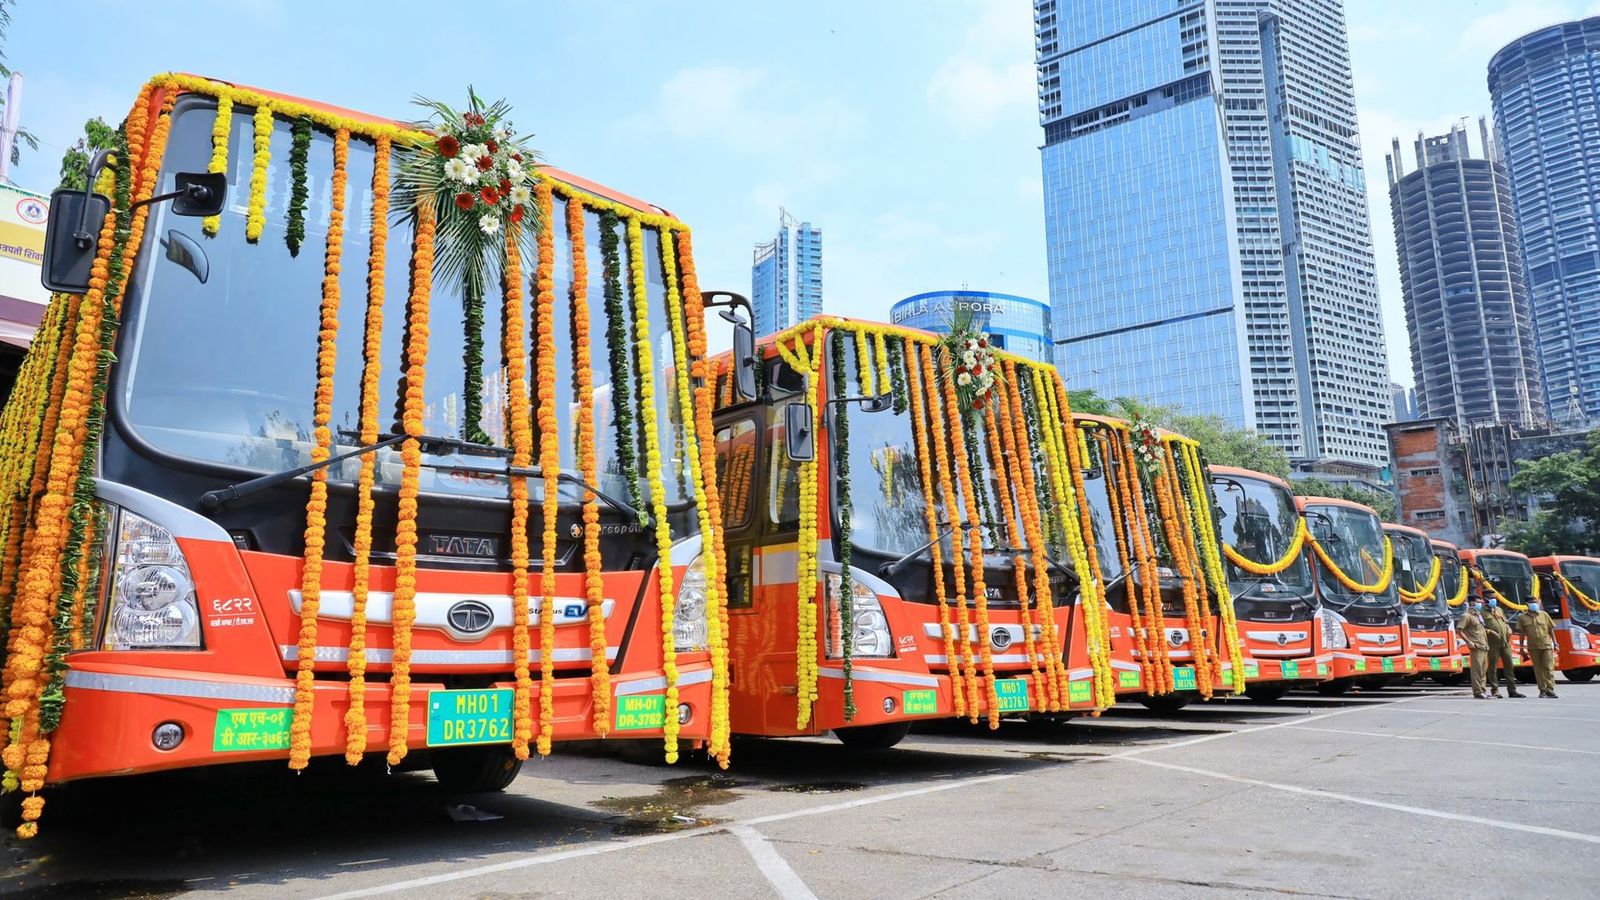 south mumbai tour bus